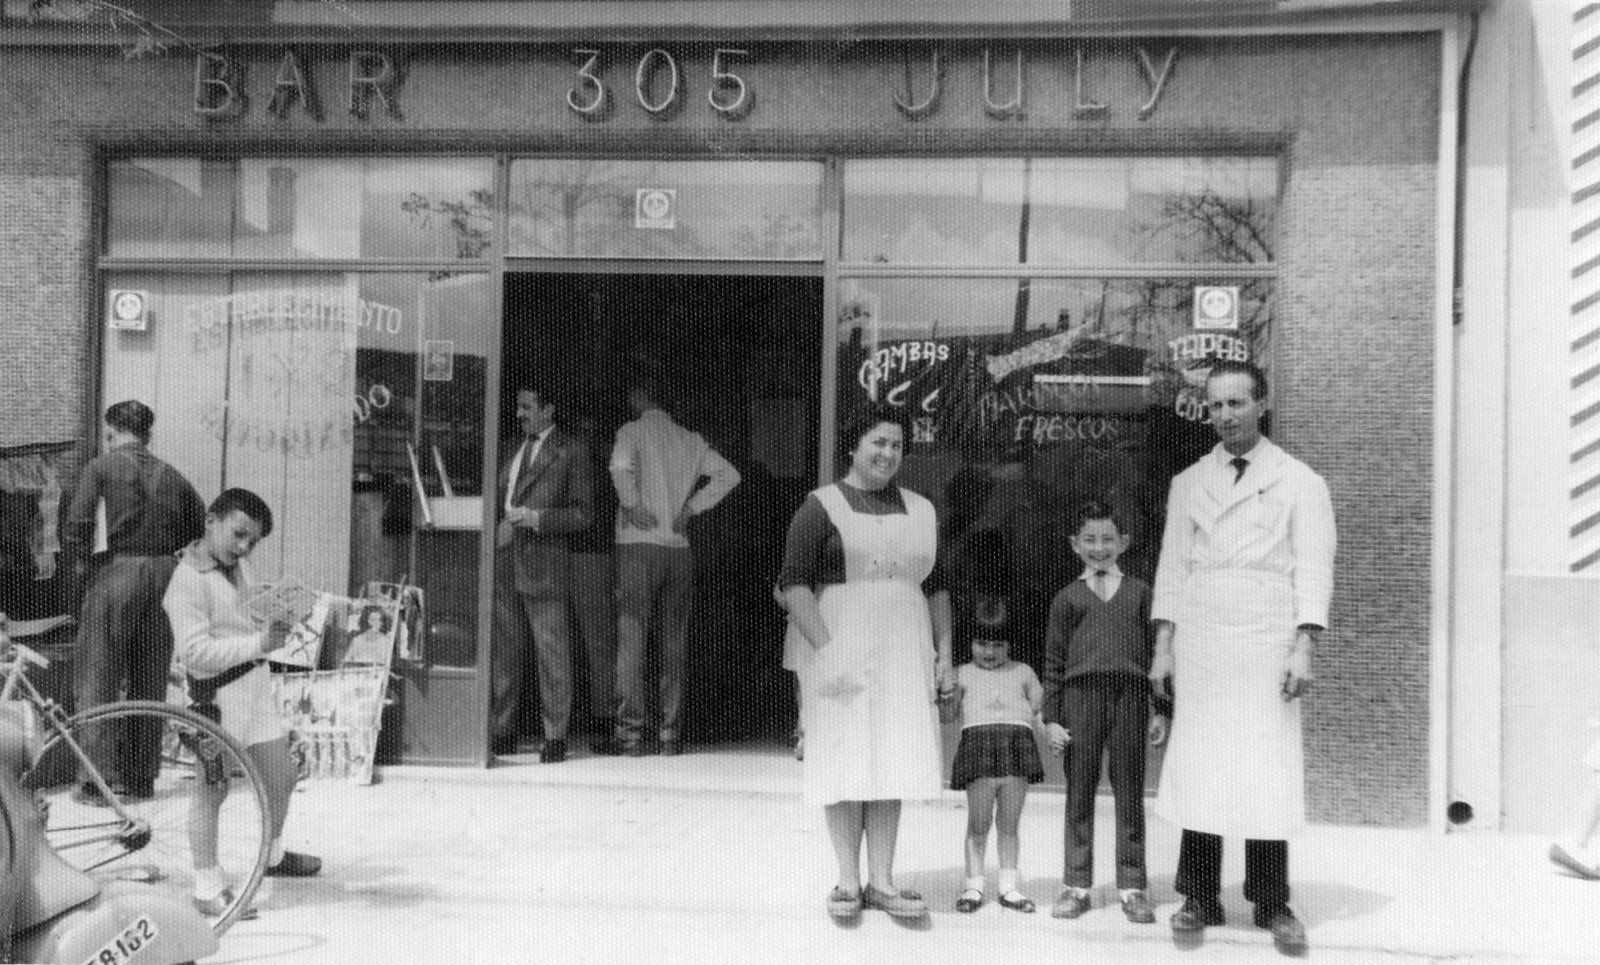 Julio Sepúlveda y su esposa Chiqui con su dos hijos en el bar July ubicado en el número 305 de la Carretera de Aragón. Año 1962.